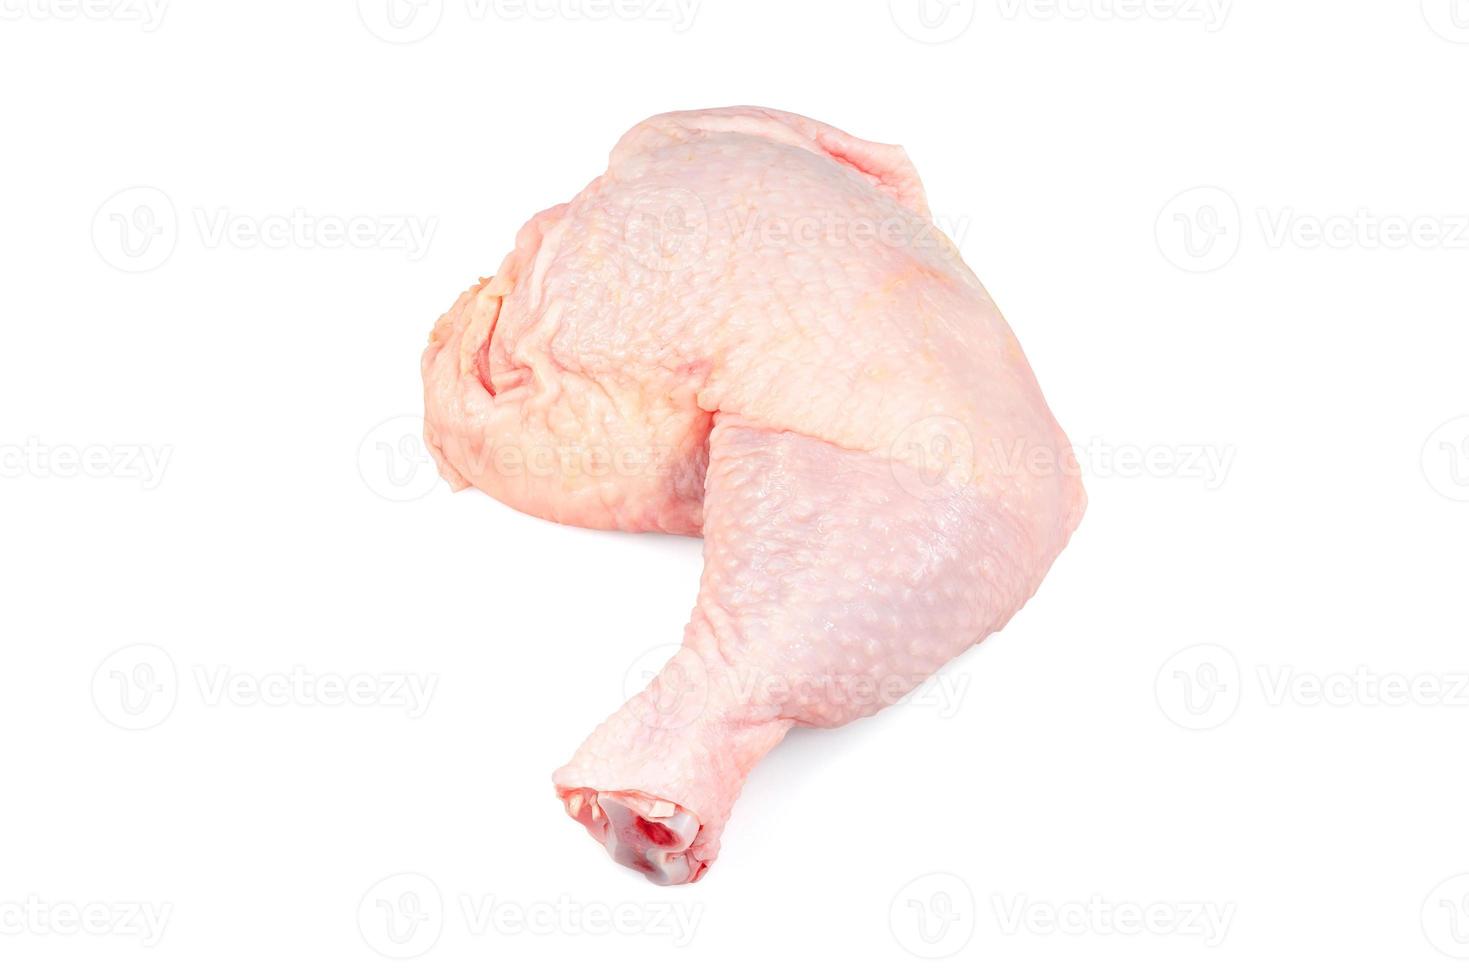 carne de pollo cruda fresca, aislada de fondo blanco. muslo o pierna de pollo, vista superior. foto